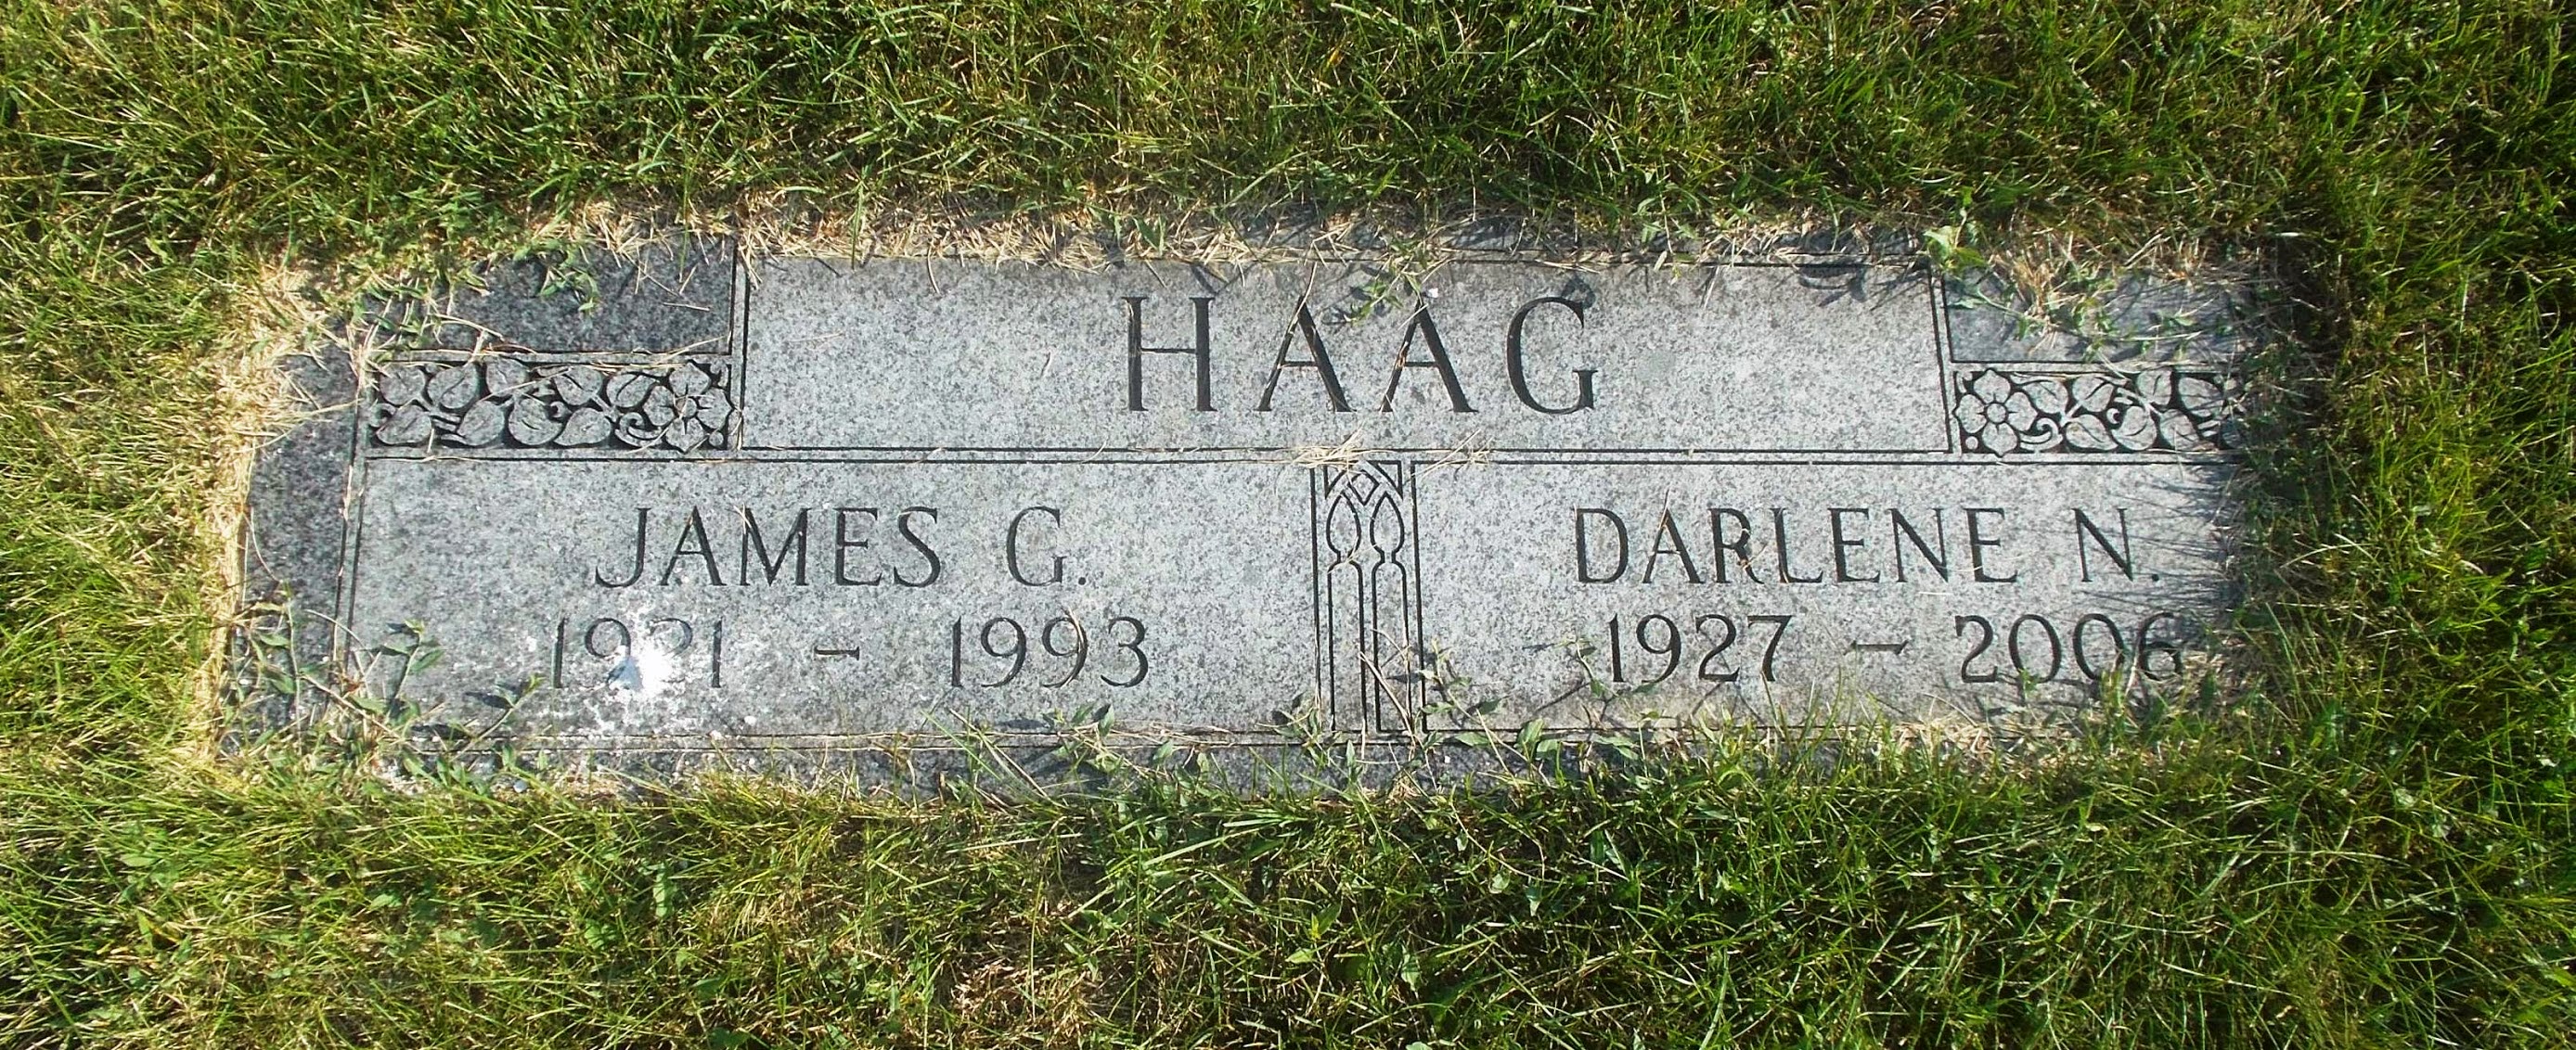 James G Haag